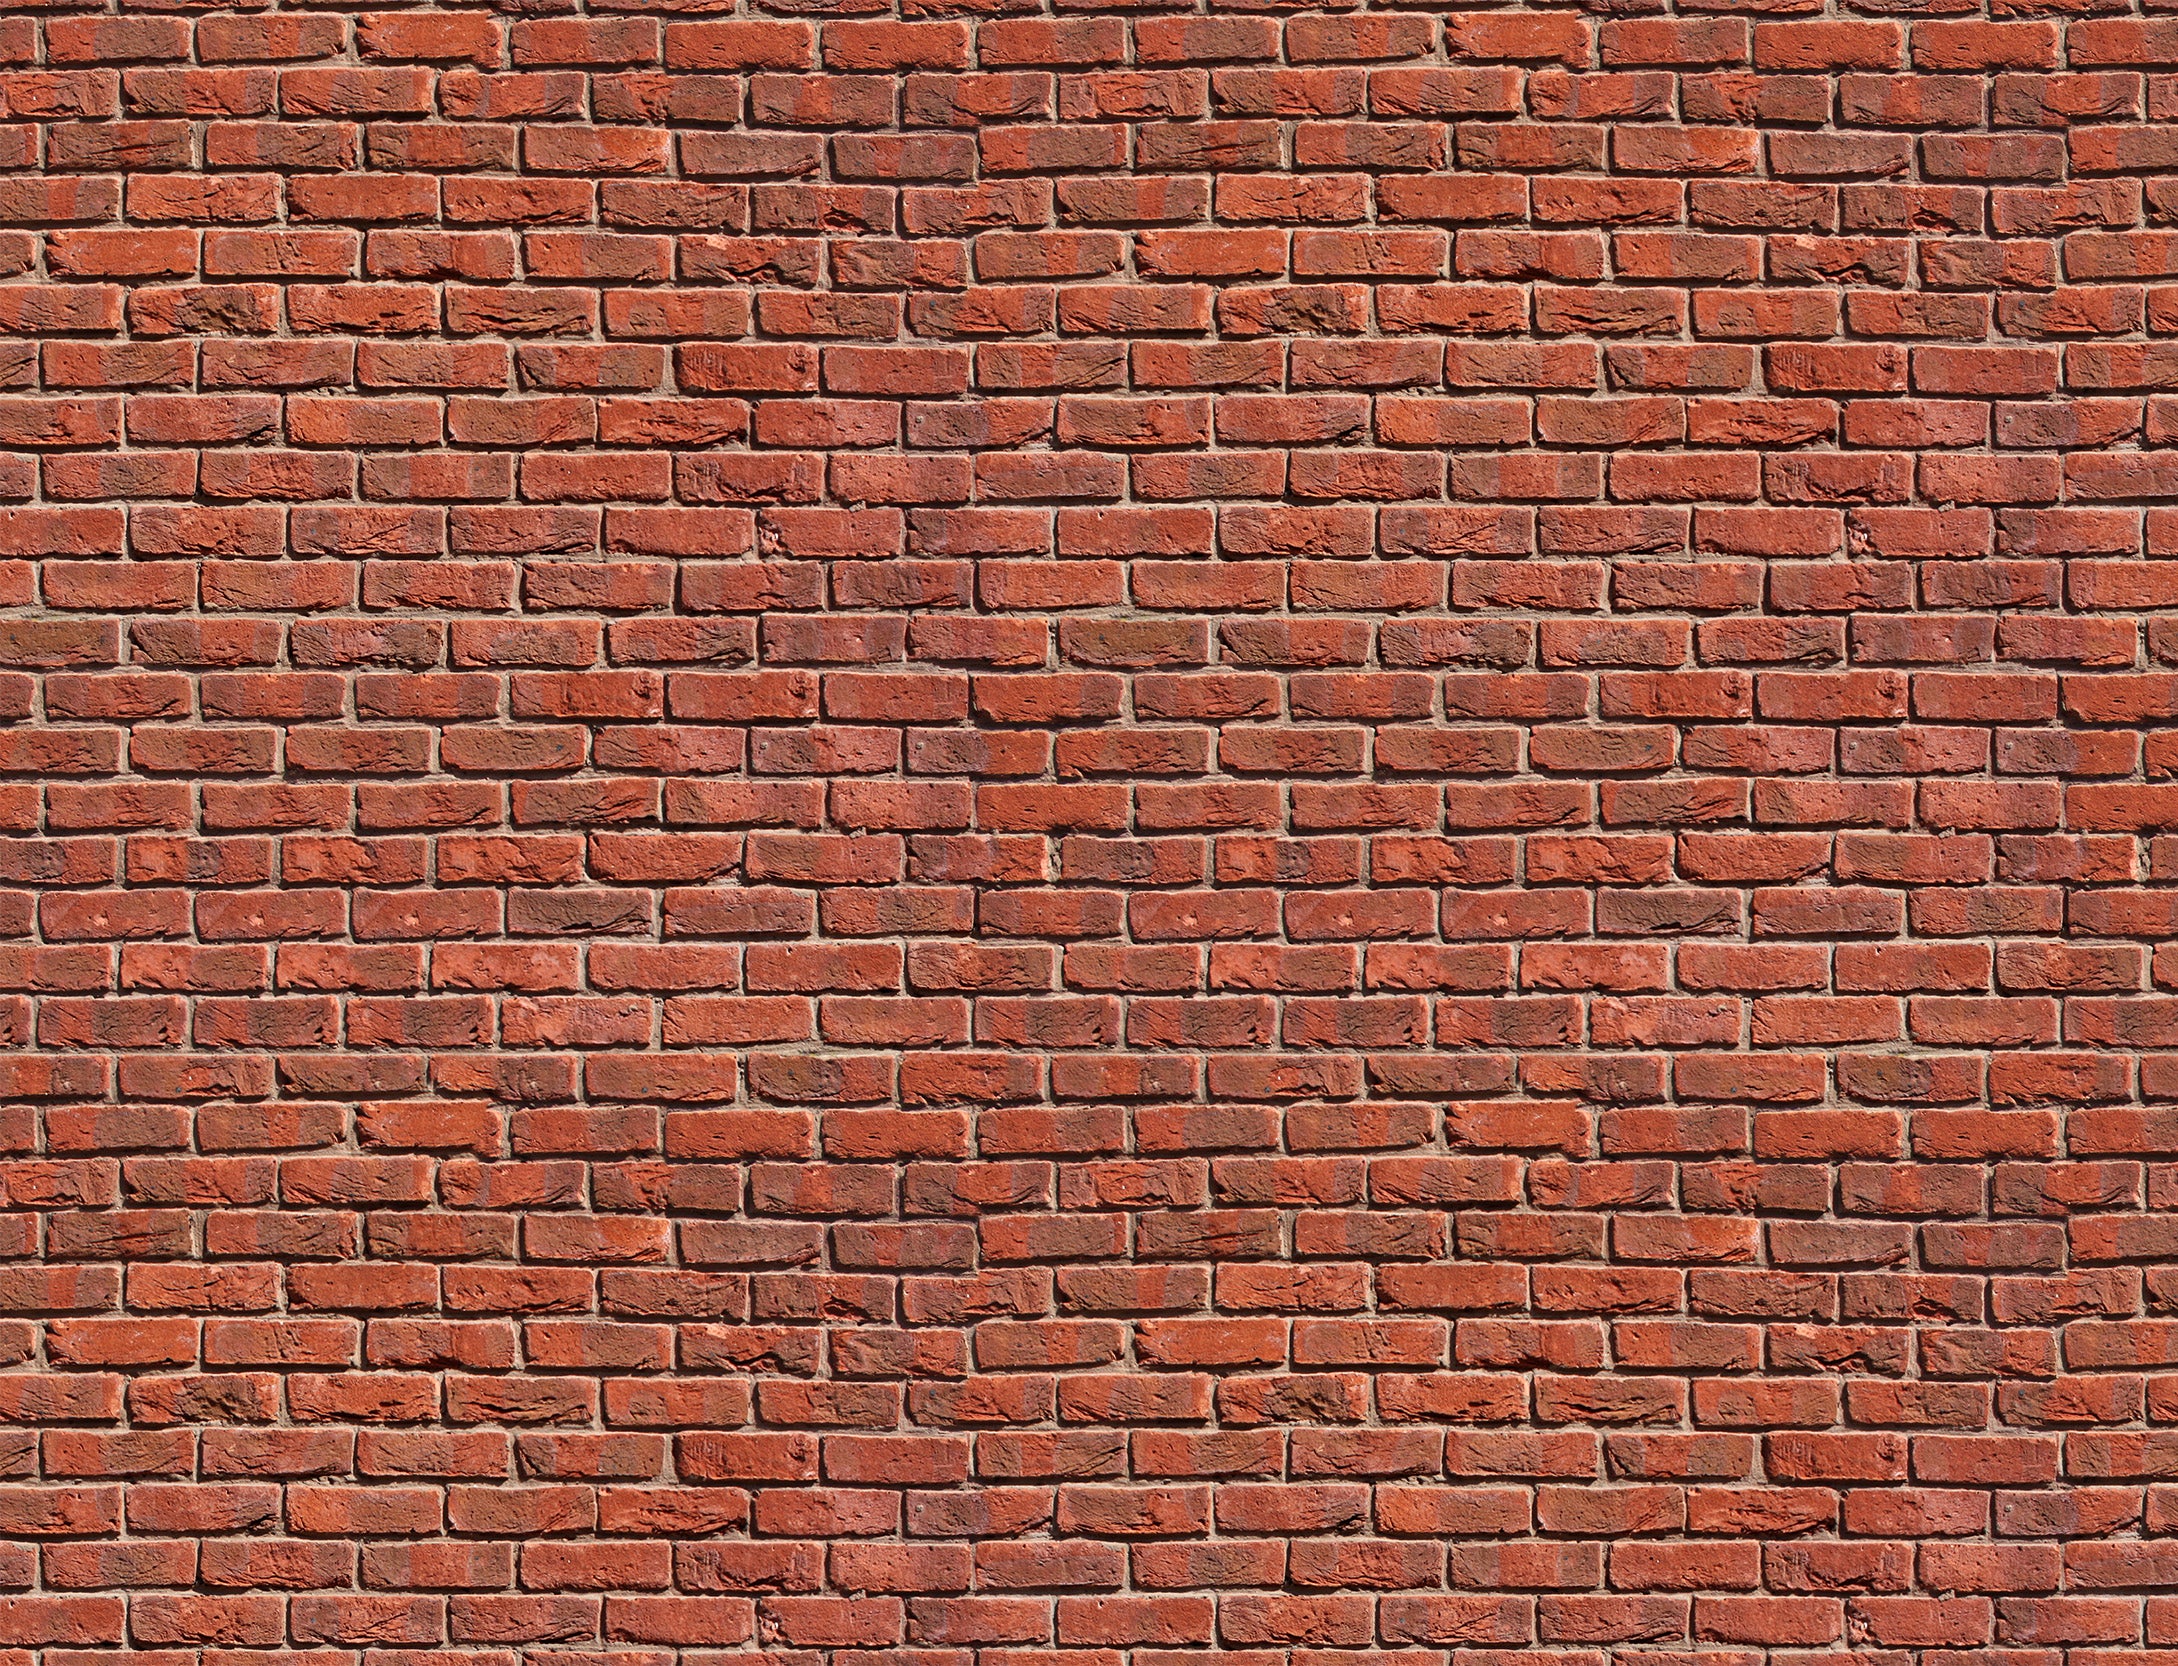 Murus Red Brick Wall Effect Wallpaper Mural Full Panoramic Artwork